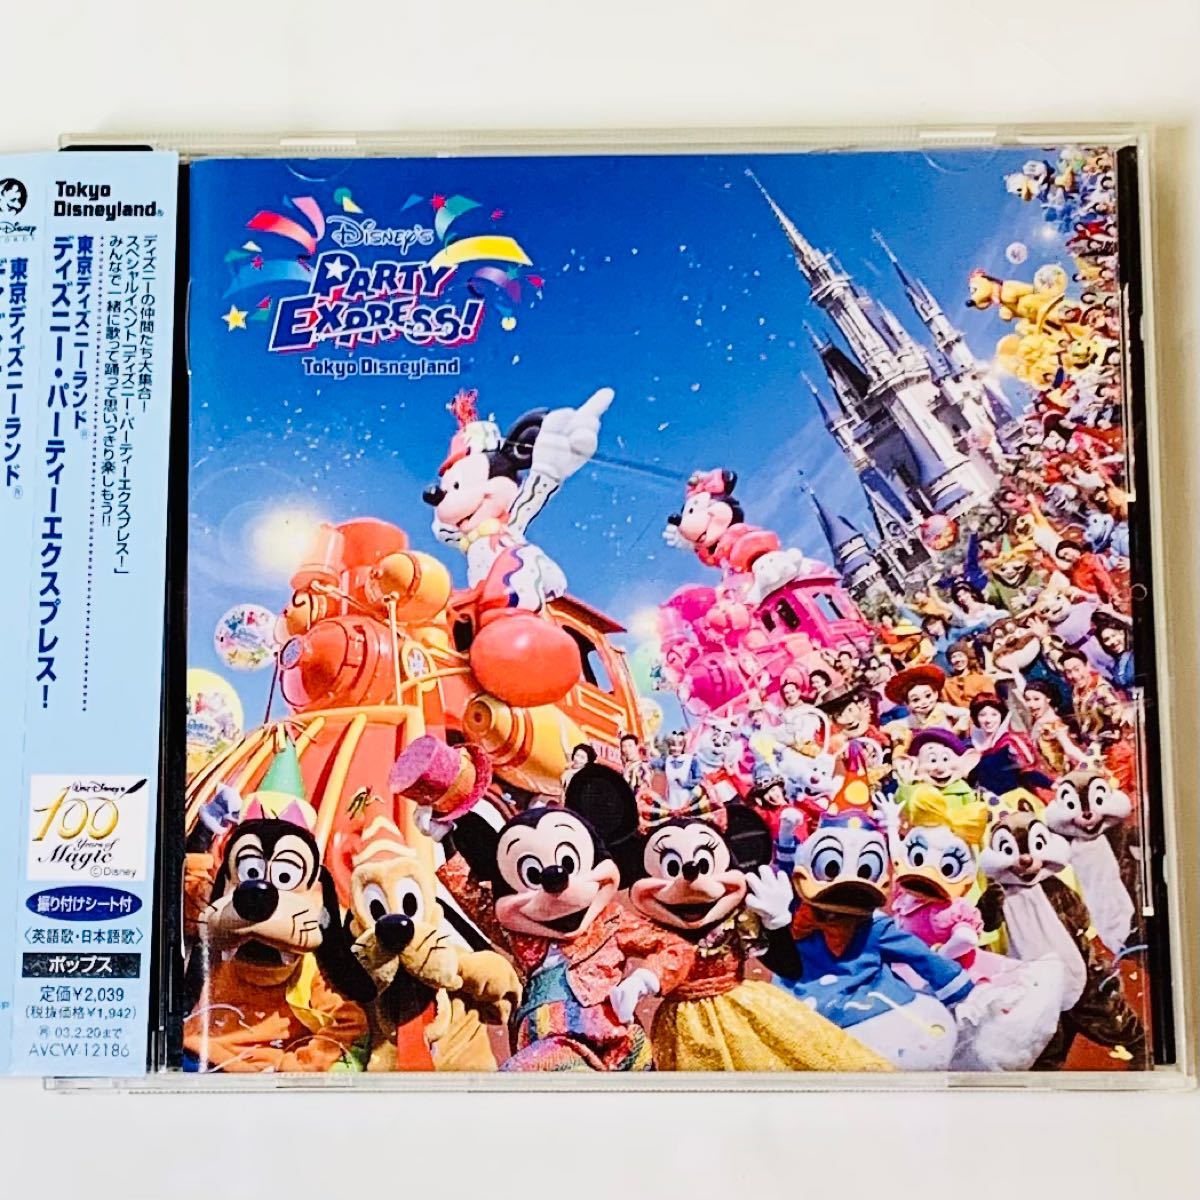 Paypayフリマ 東京ディズニーランド ディズニー パーティー エクスプレス 廃盤cd ヴィンテージ コレクション 一緒に踊れる振り付けシート付き